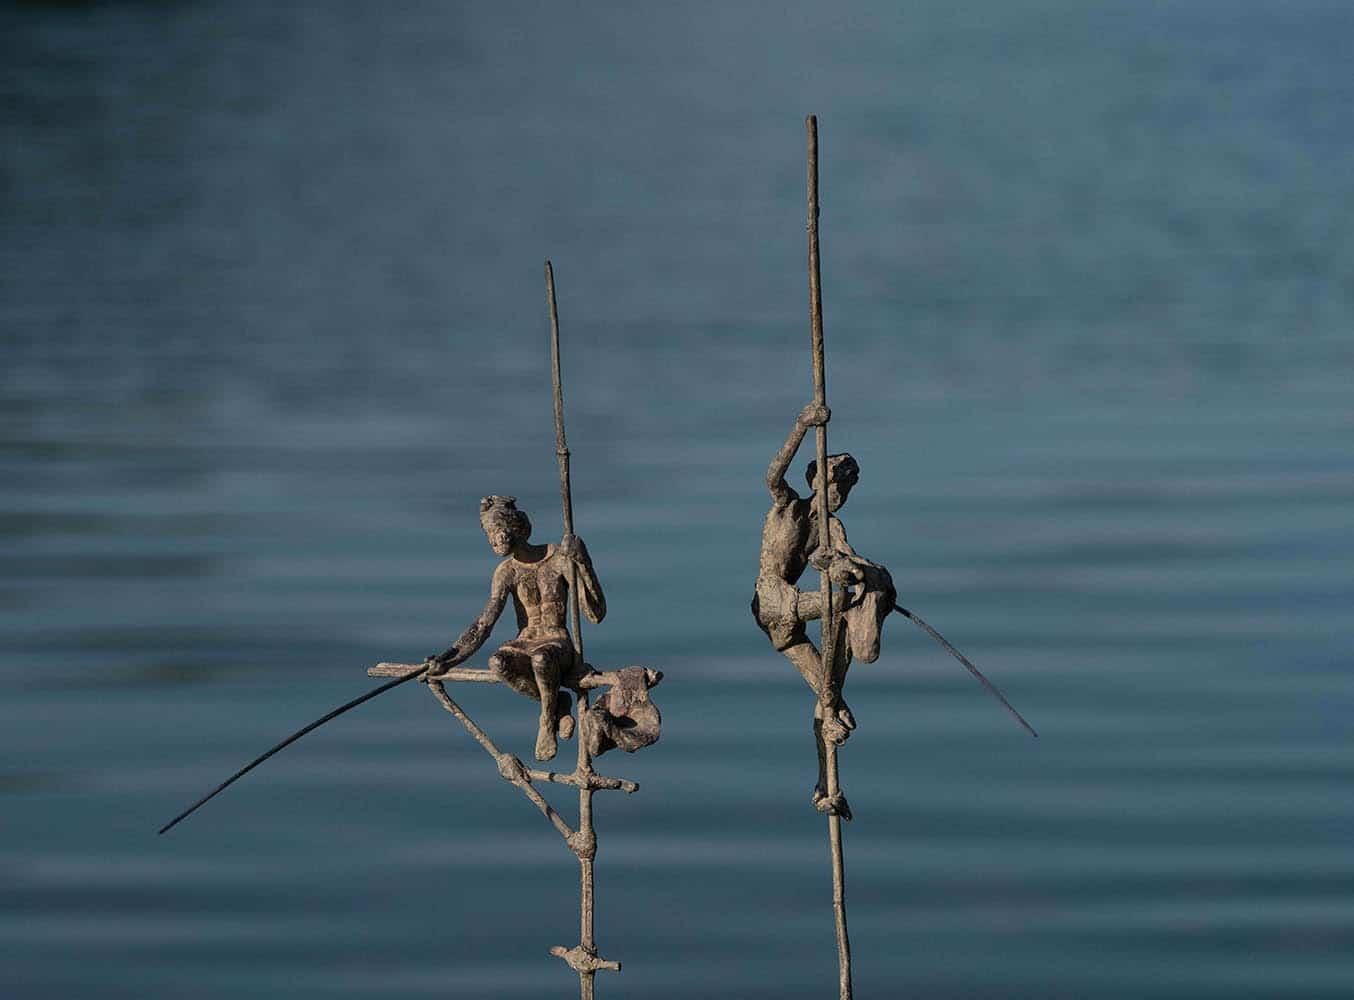 Group of Two Fishermen on Stilt IV ist eine Bronzeskulptur der französischen Künstlerin Marine de Soos mit den Maßen 50 × 45 × 32 cm (19,7 × 17,7 × 12,6 in). 
Die Skulptur ist signiert und nummeriert, gehört zu einer limitierten Auflage von 8